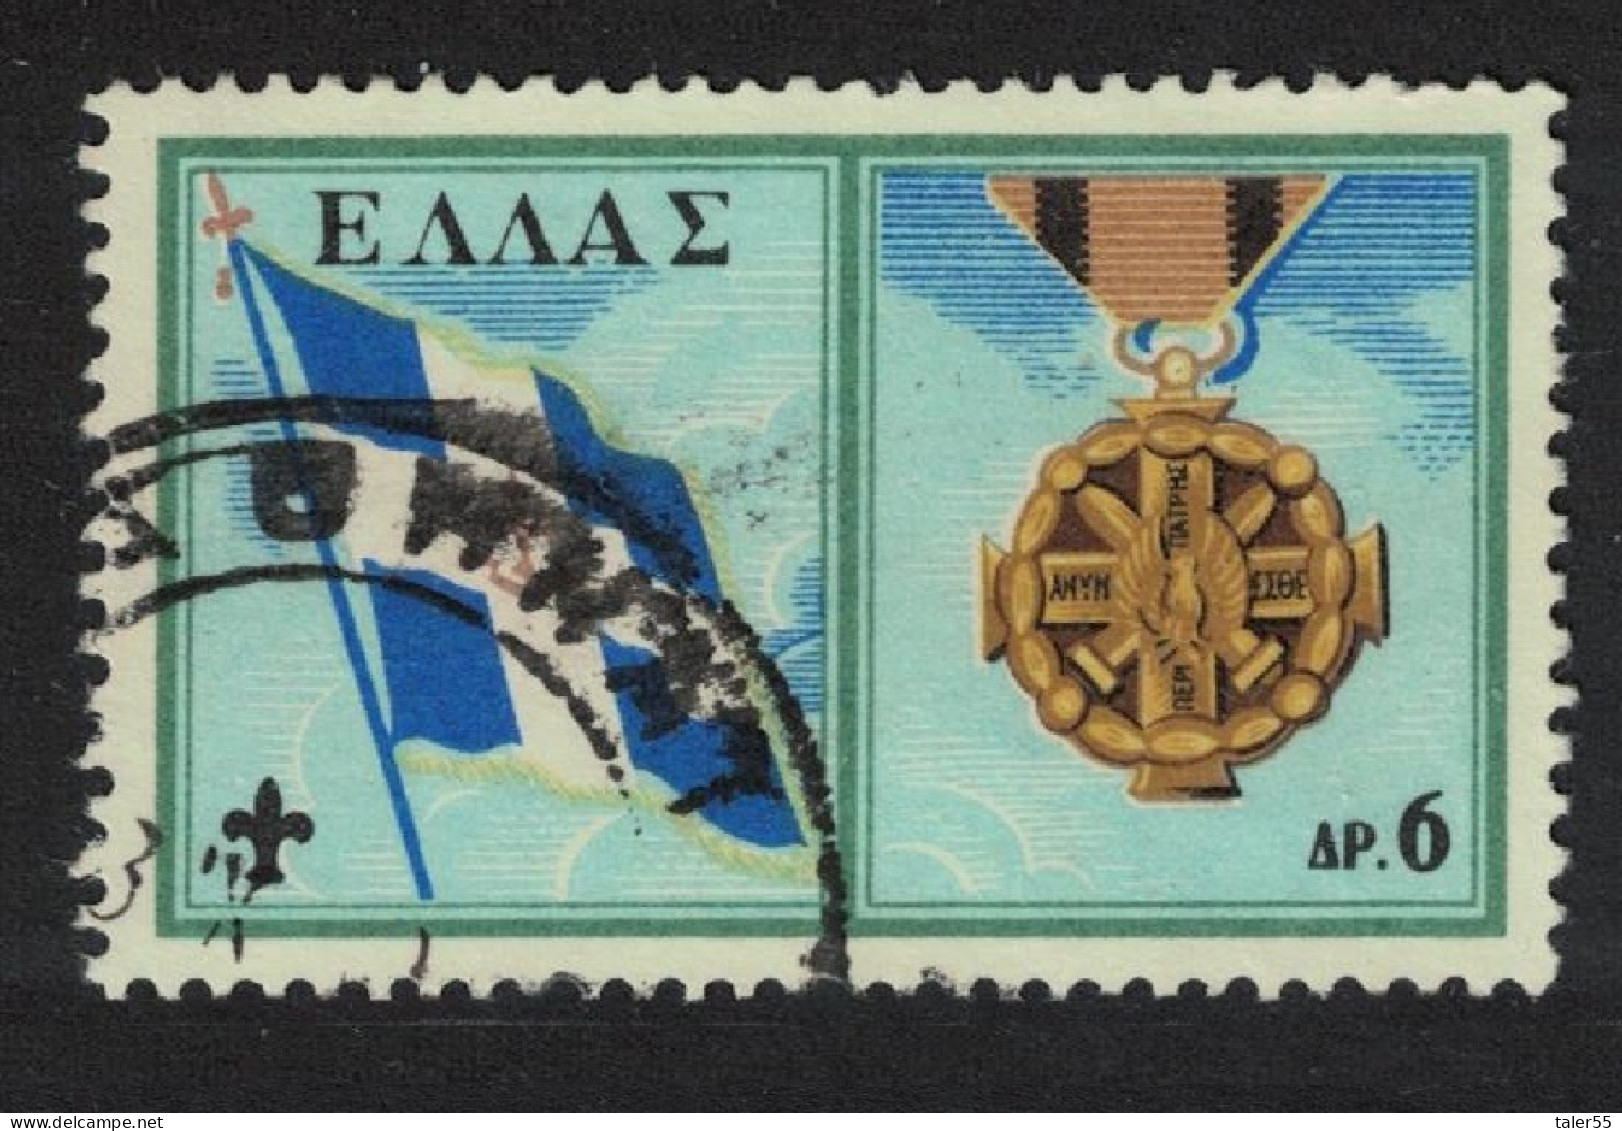 Greece Greek Boy Scout Movement 6Dr KEY VALUE 1960 Canc SG#836 MI#733 - Gebraucht